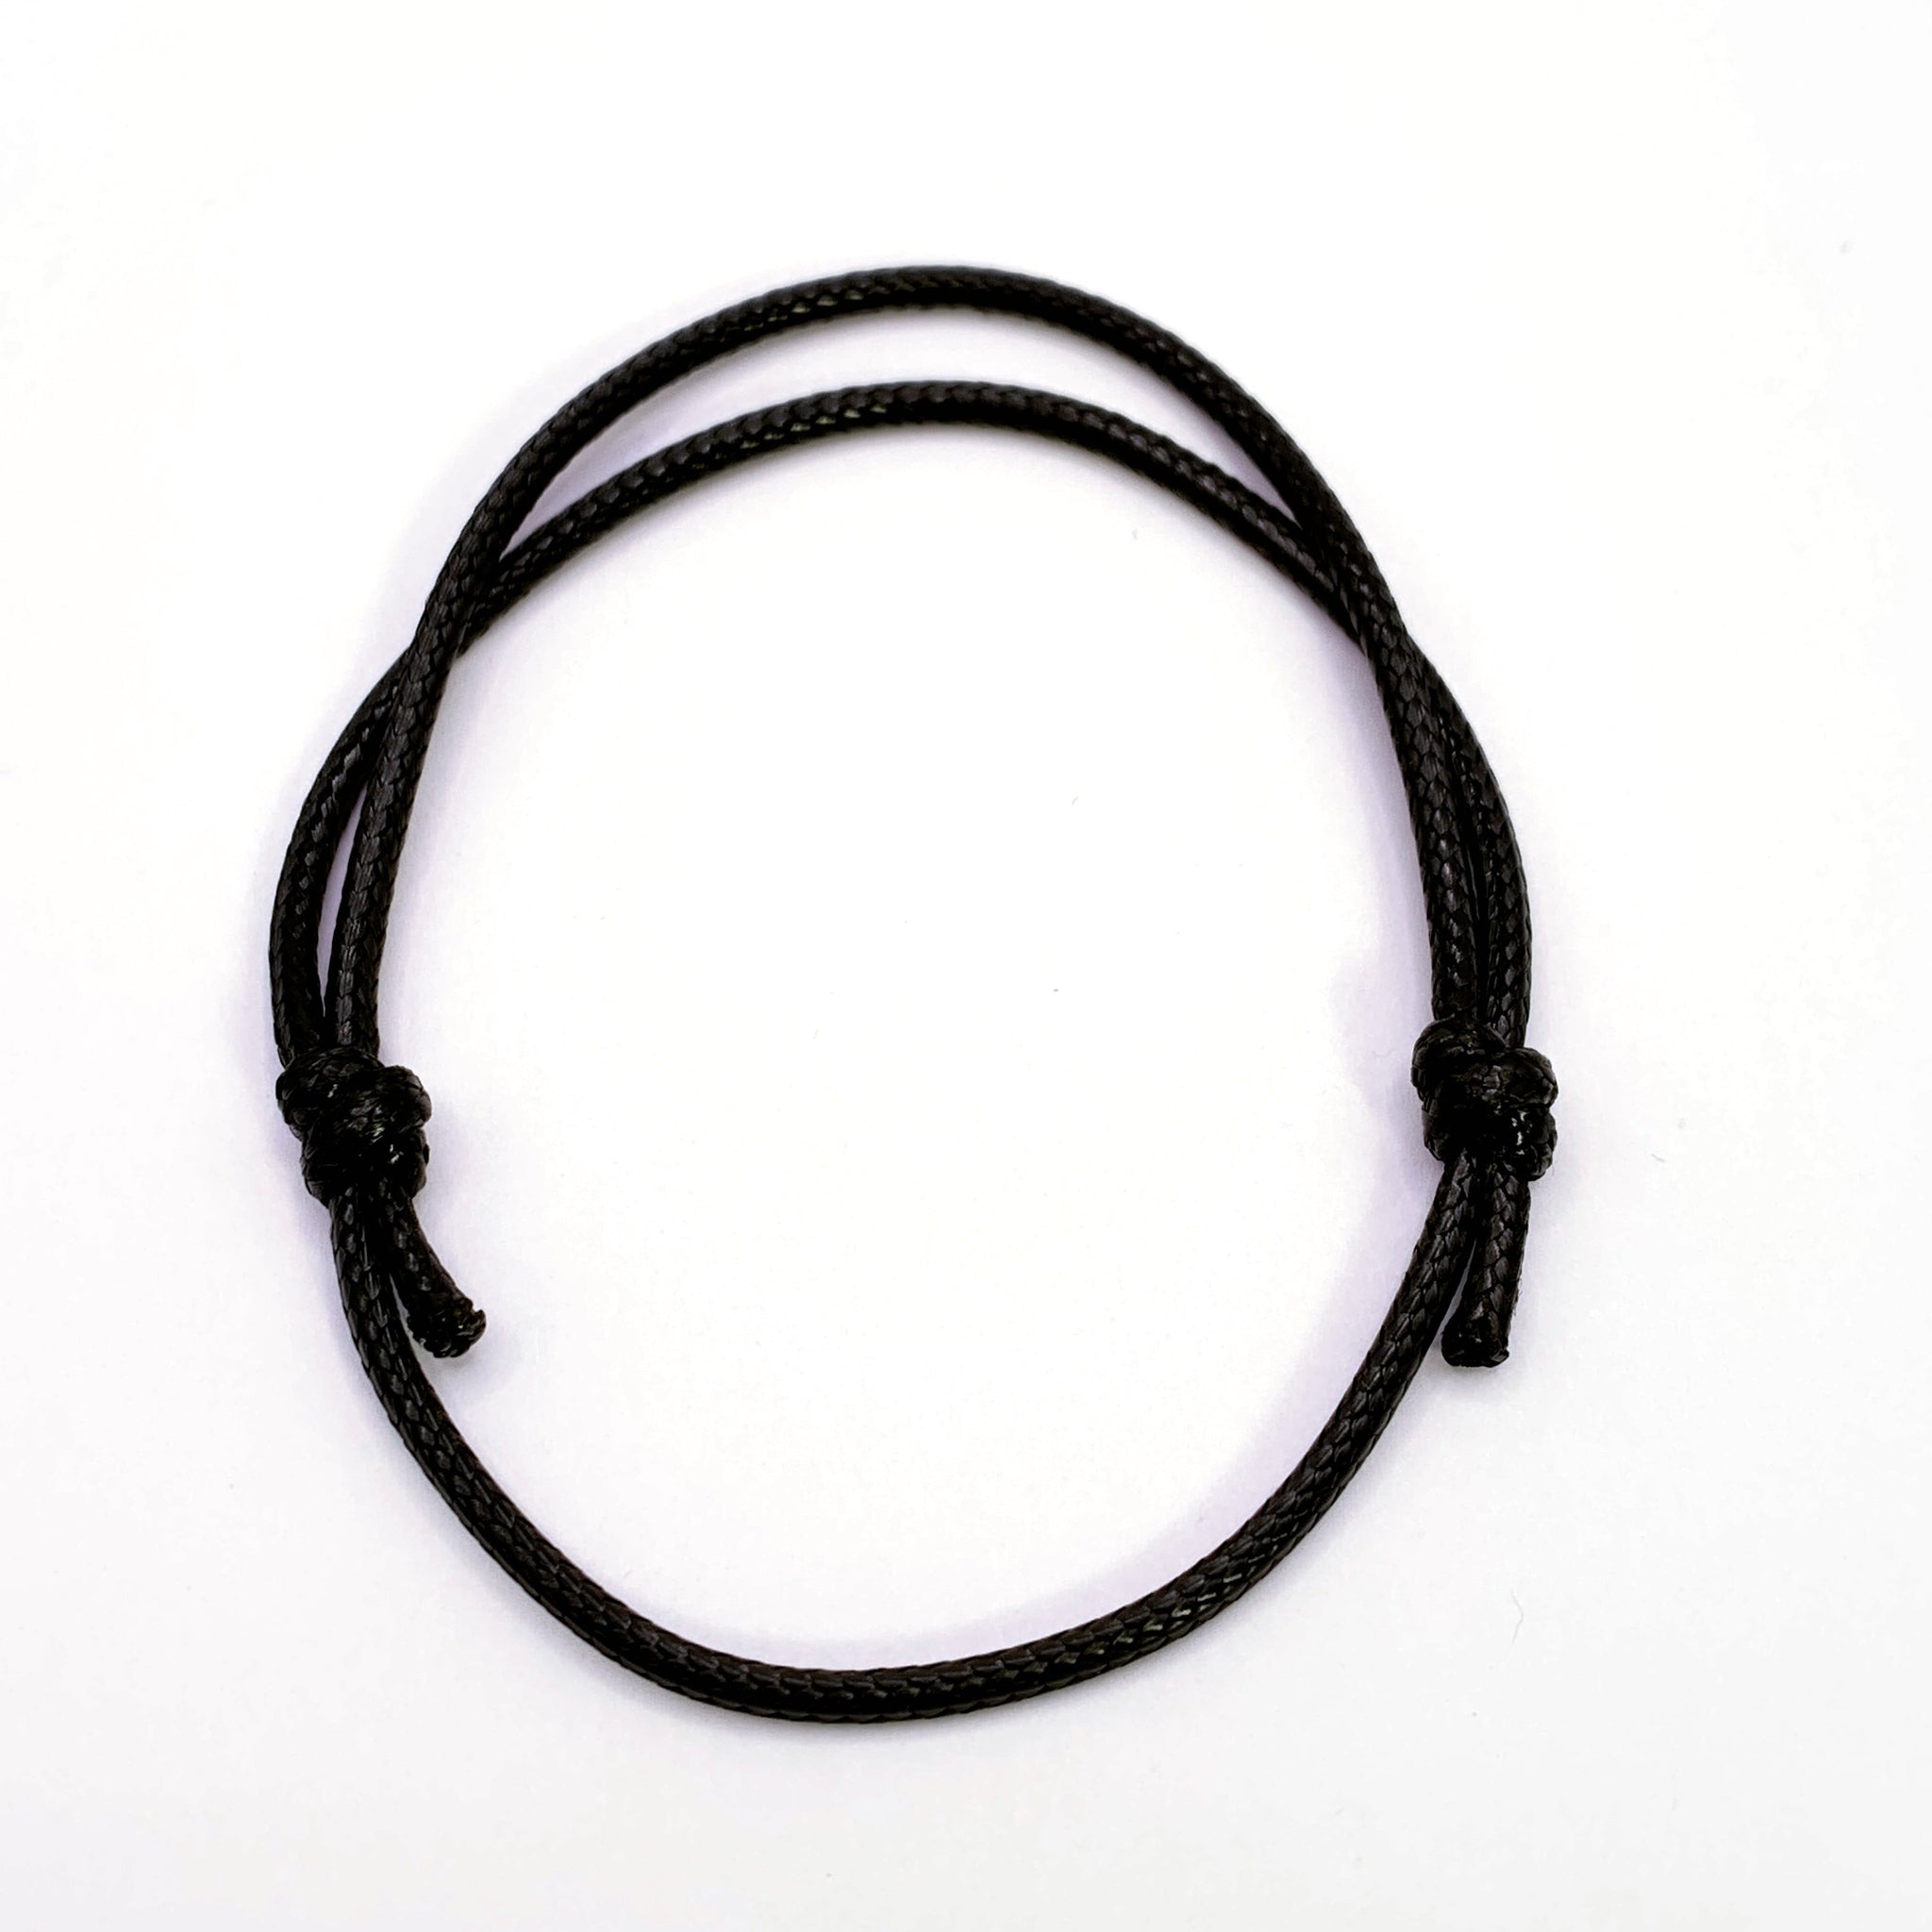 Black Wax Cord Adjustable Bracelets, 24cm - 10 pack – Easy Crafts